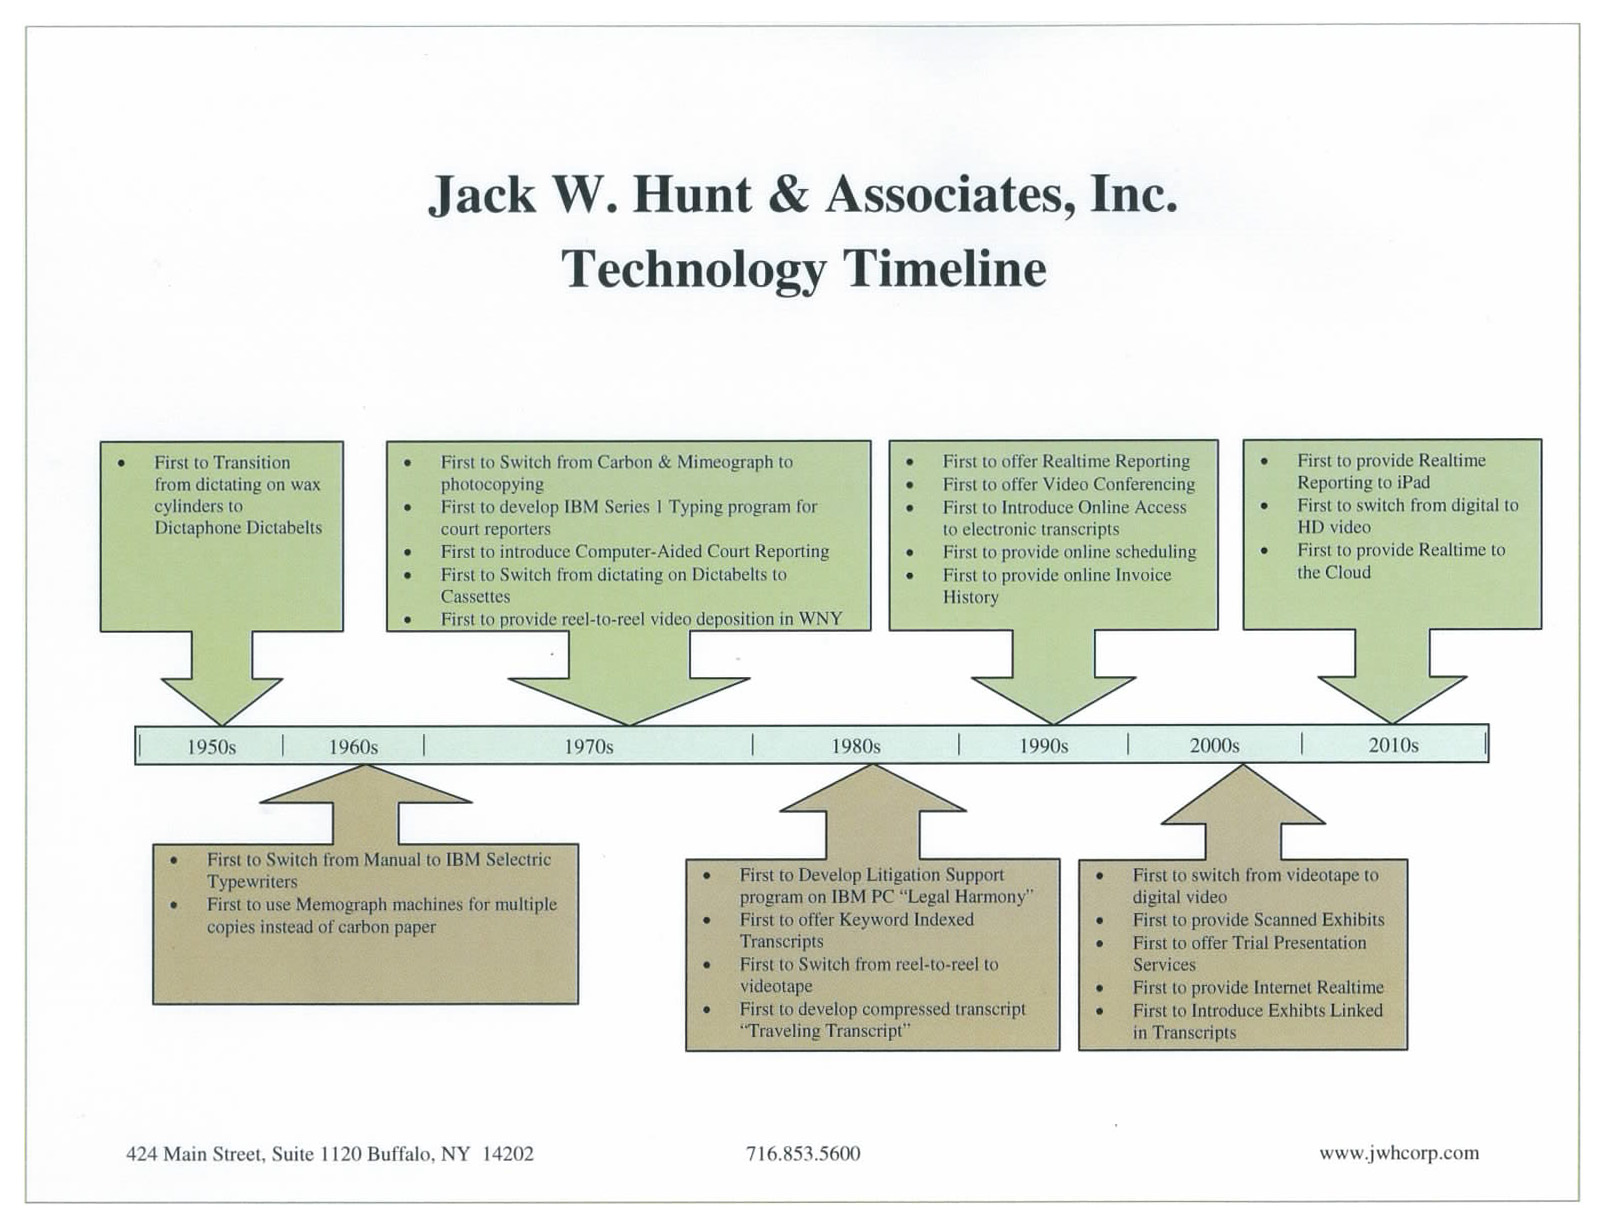 Timeline of technology at Jack W. Hunt & Associates